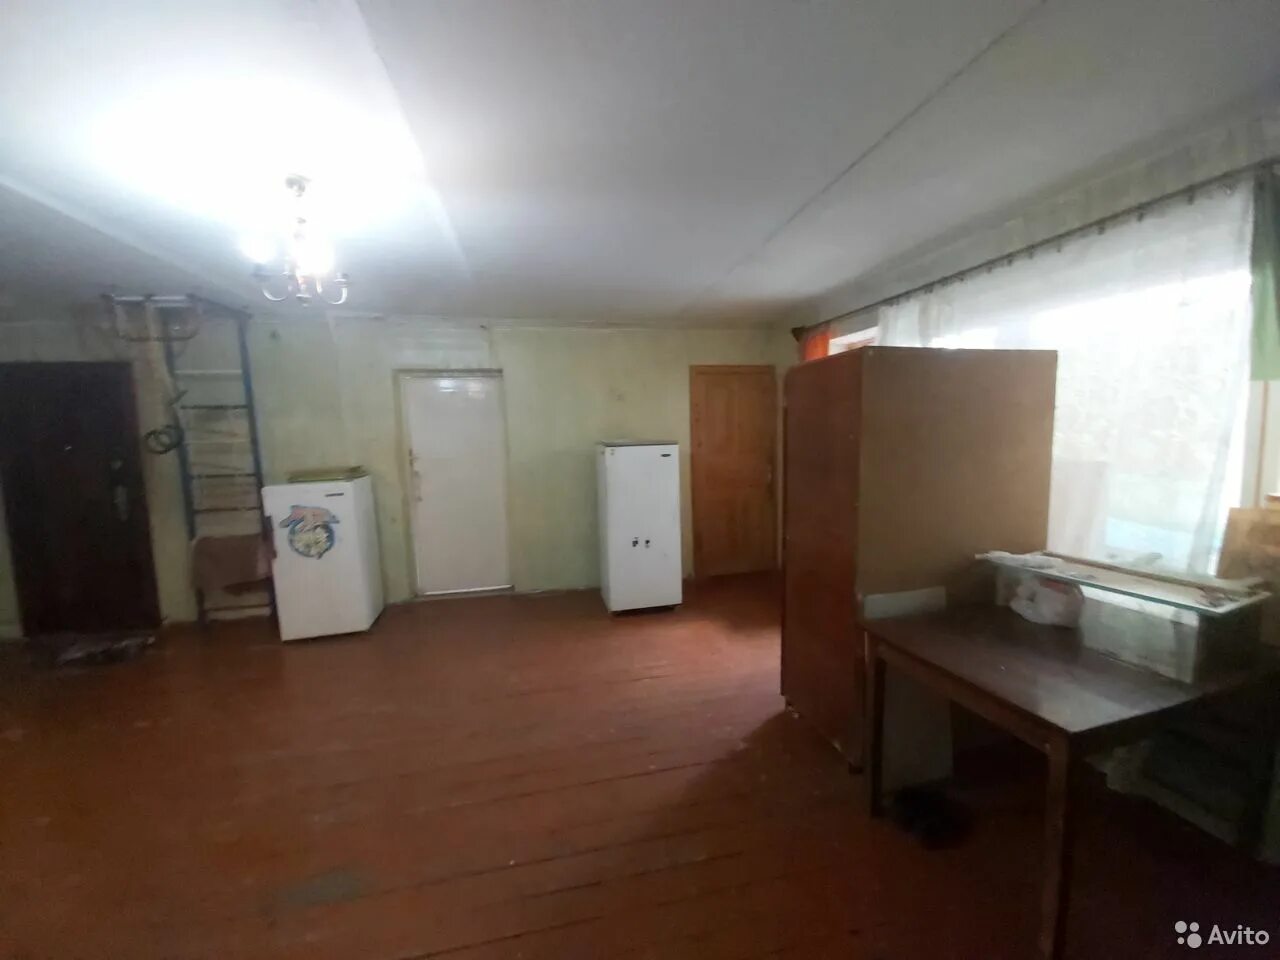 Комната на общей кухне в пензе купить. Купить комнату на общей кухне в Пензе.